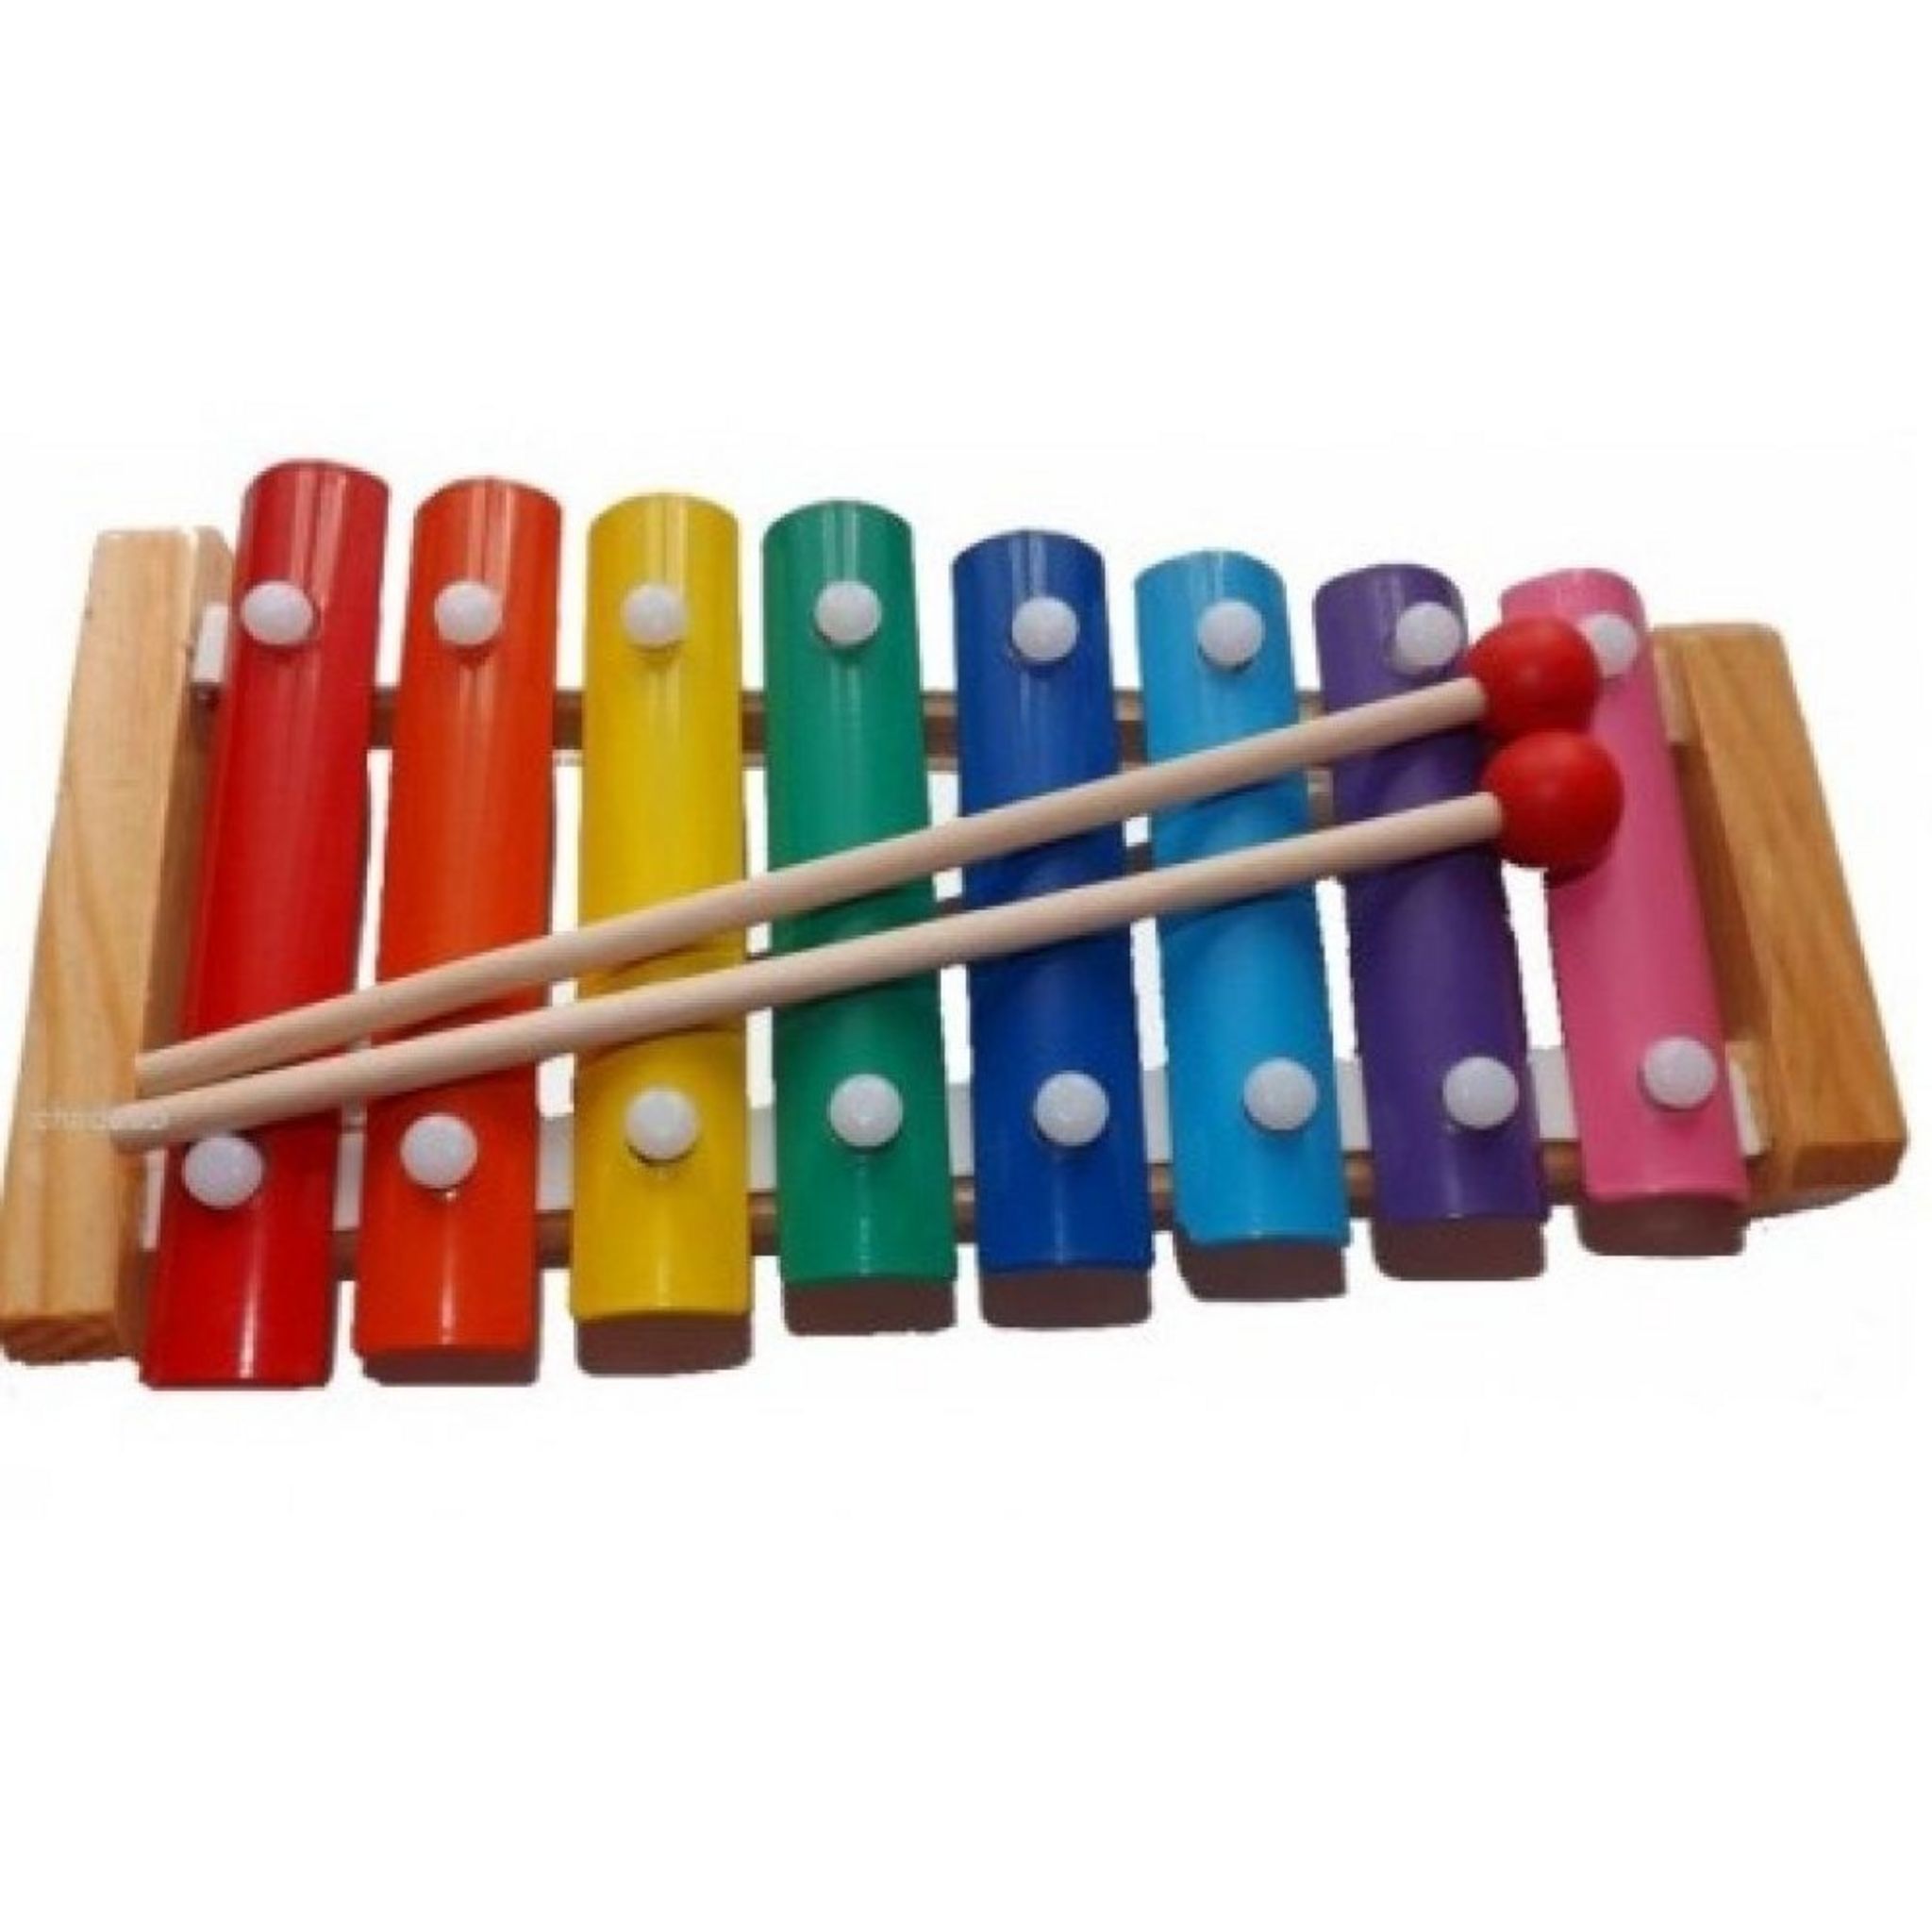 Xylophone bois et métal jouet enfant musique pas cher 